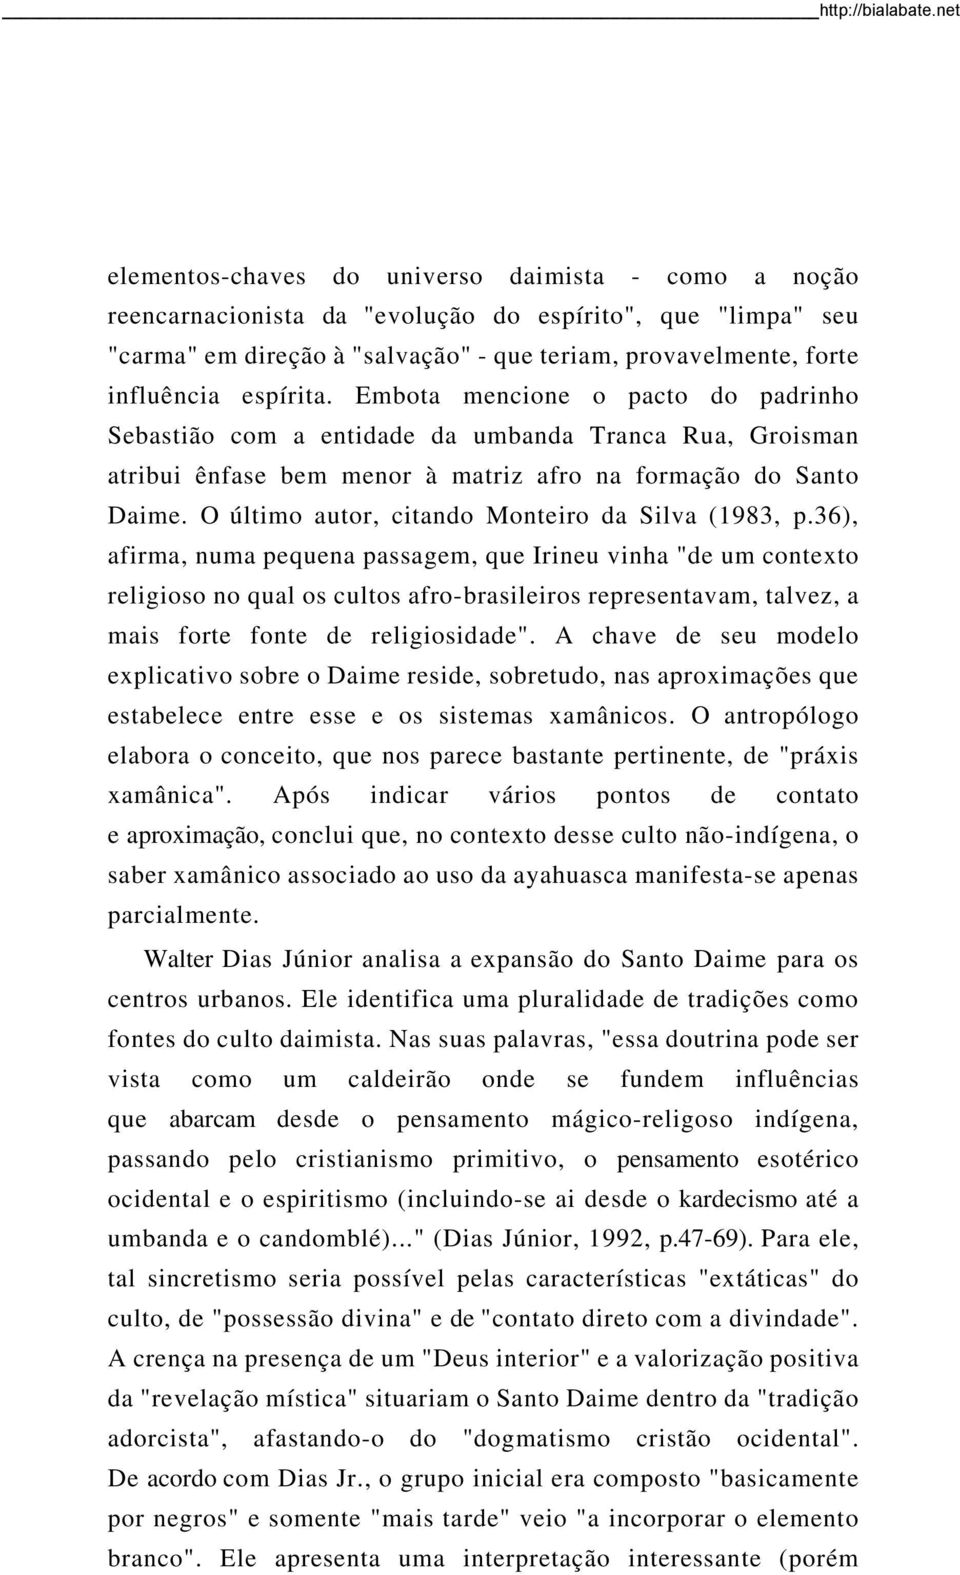 O último autor, citando Monteiro da Silva (1983, p.